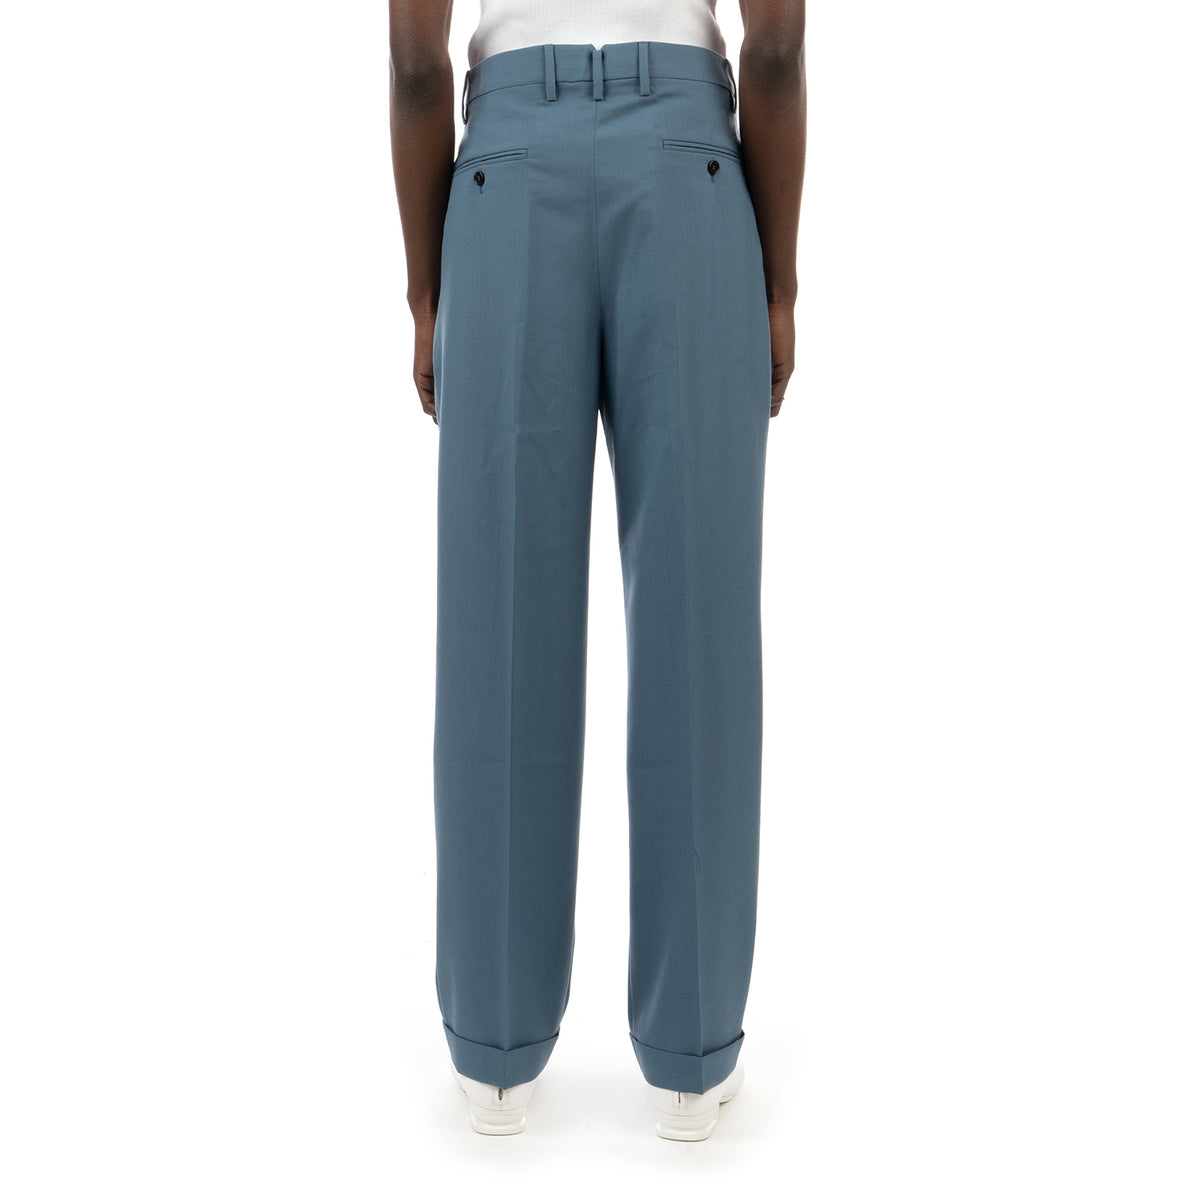 Marni | Trousers Blue PUMU0091A0 - Concrete